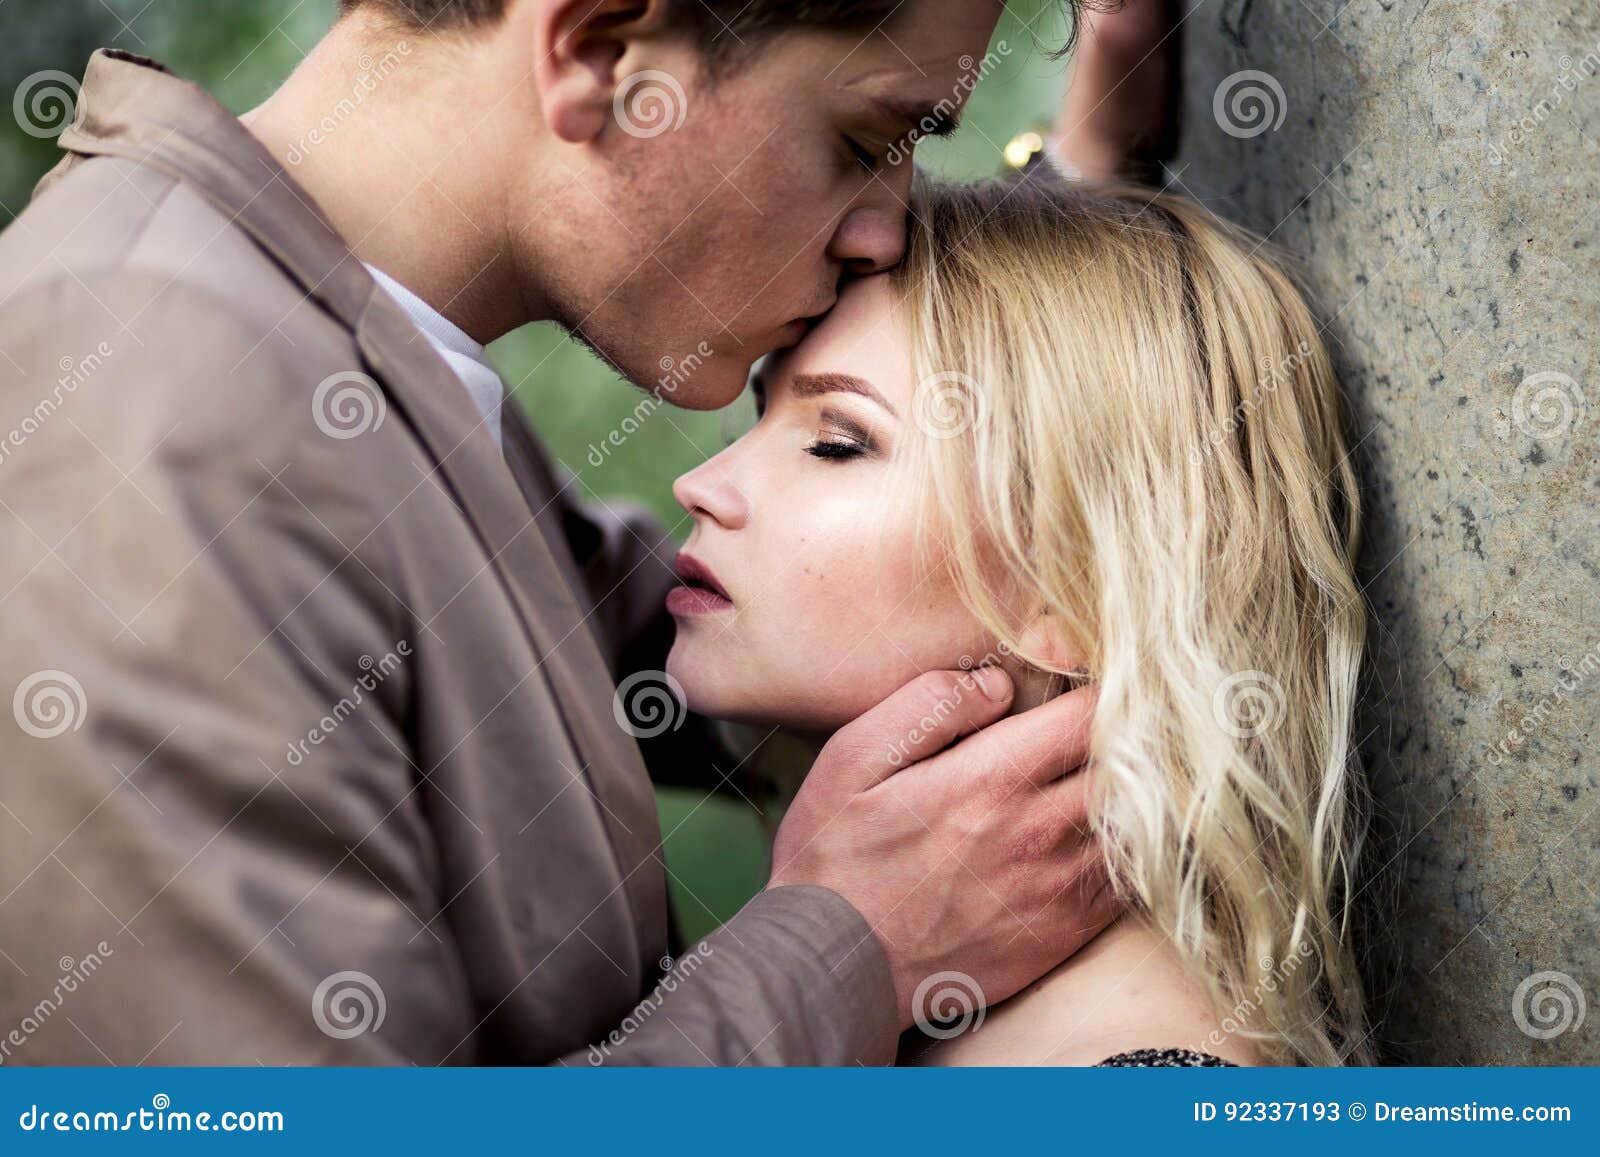 Можно ли целовать в лоб. Поцелуй в лоб. Человек целует другого в лоб. Мужчина целует женщину в лоб. Женщина целует женщину в лоб.